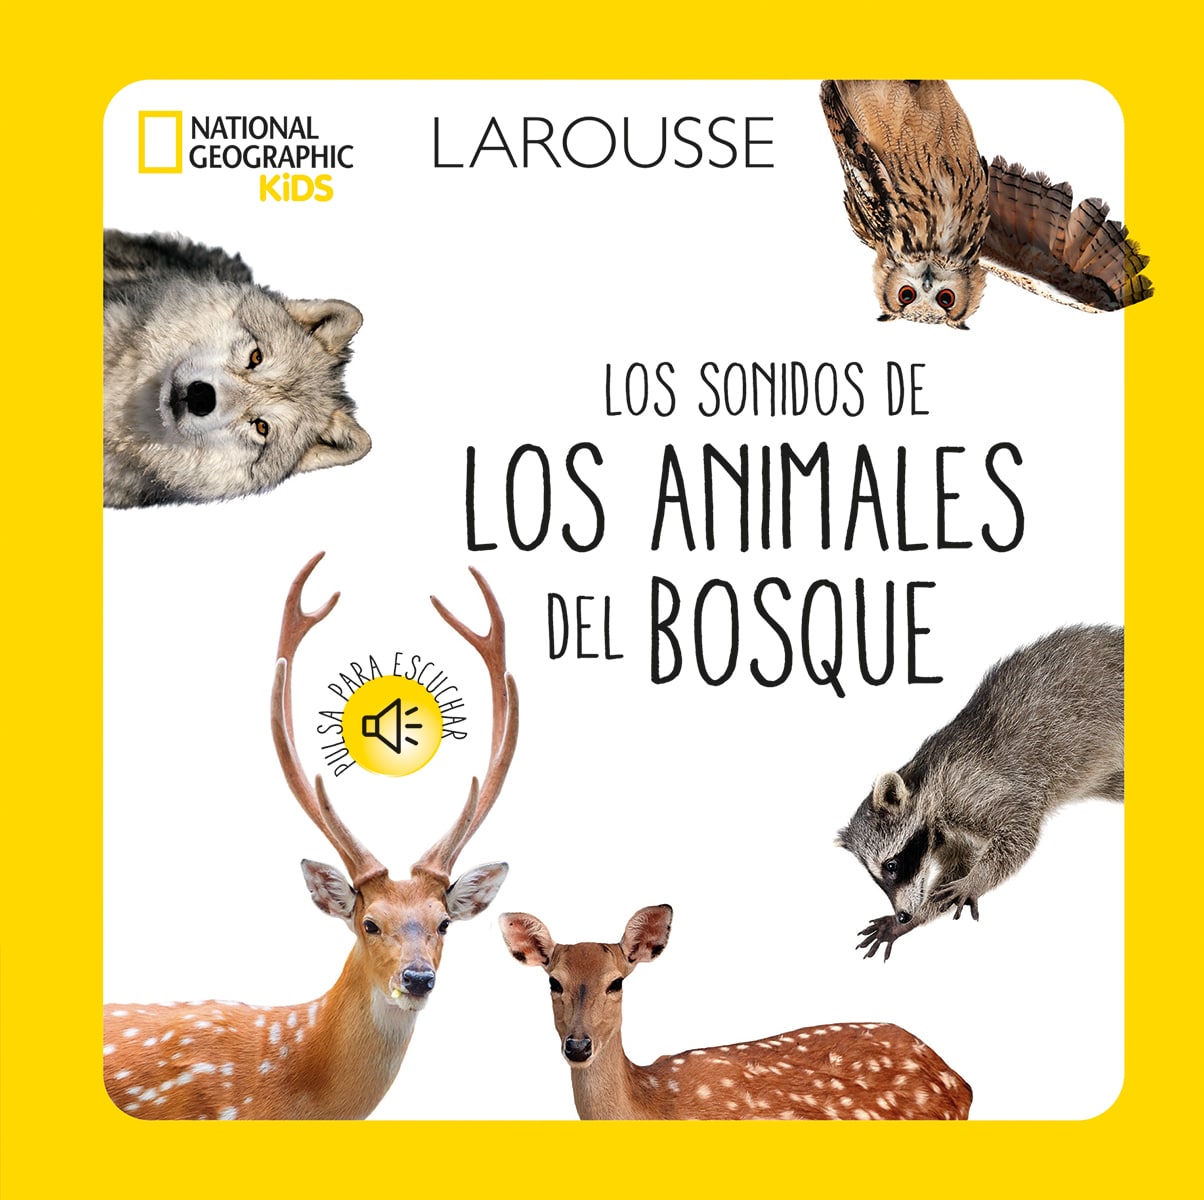 Los sonidos de los animales del bosque National Geographic Kids